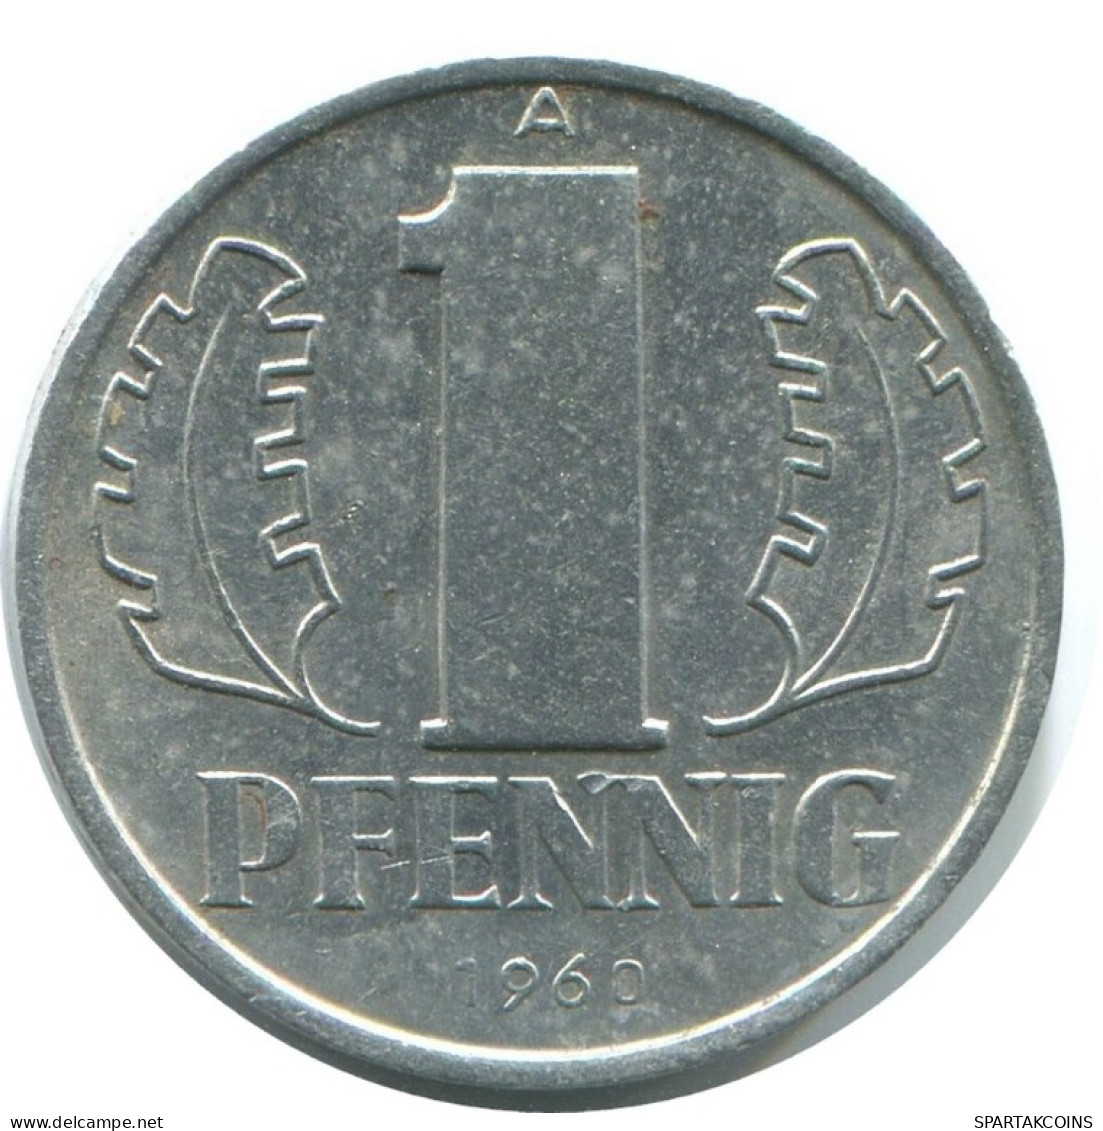 1 PFENNIG 1960 A DDR EAST DEUTSCHLAND Münze GERMANY #AE046.D.A - 1 Pfennig